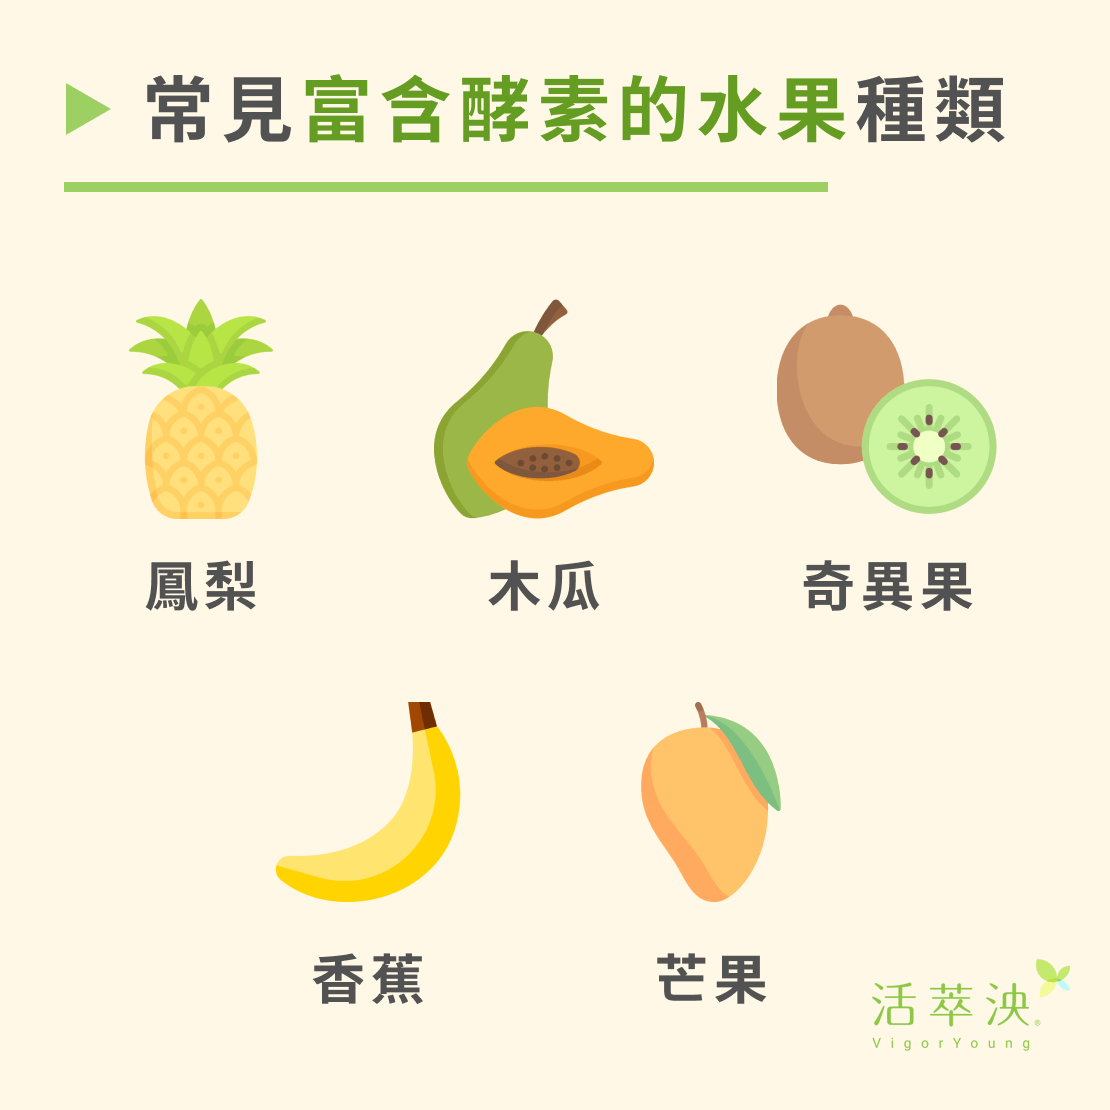 常見富含酵素的水果種類：鳳梨、木瓜、奇異果、香蕉、芒果